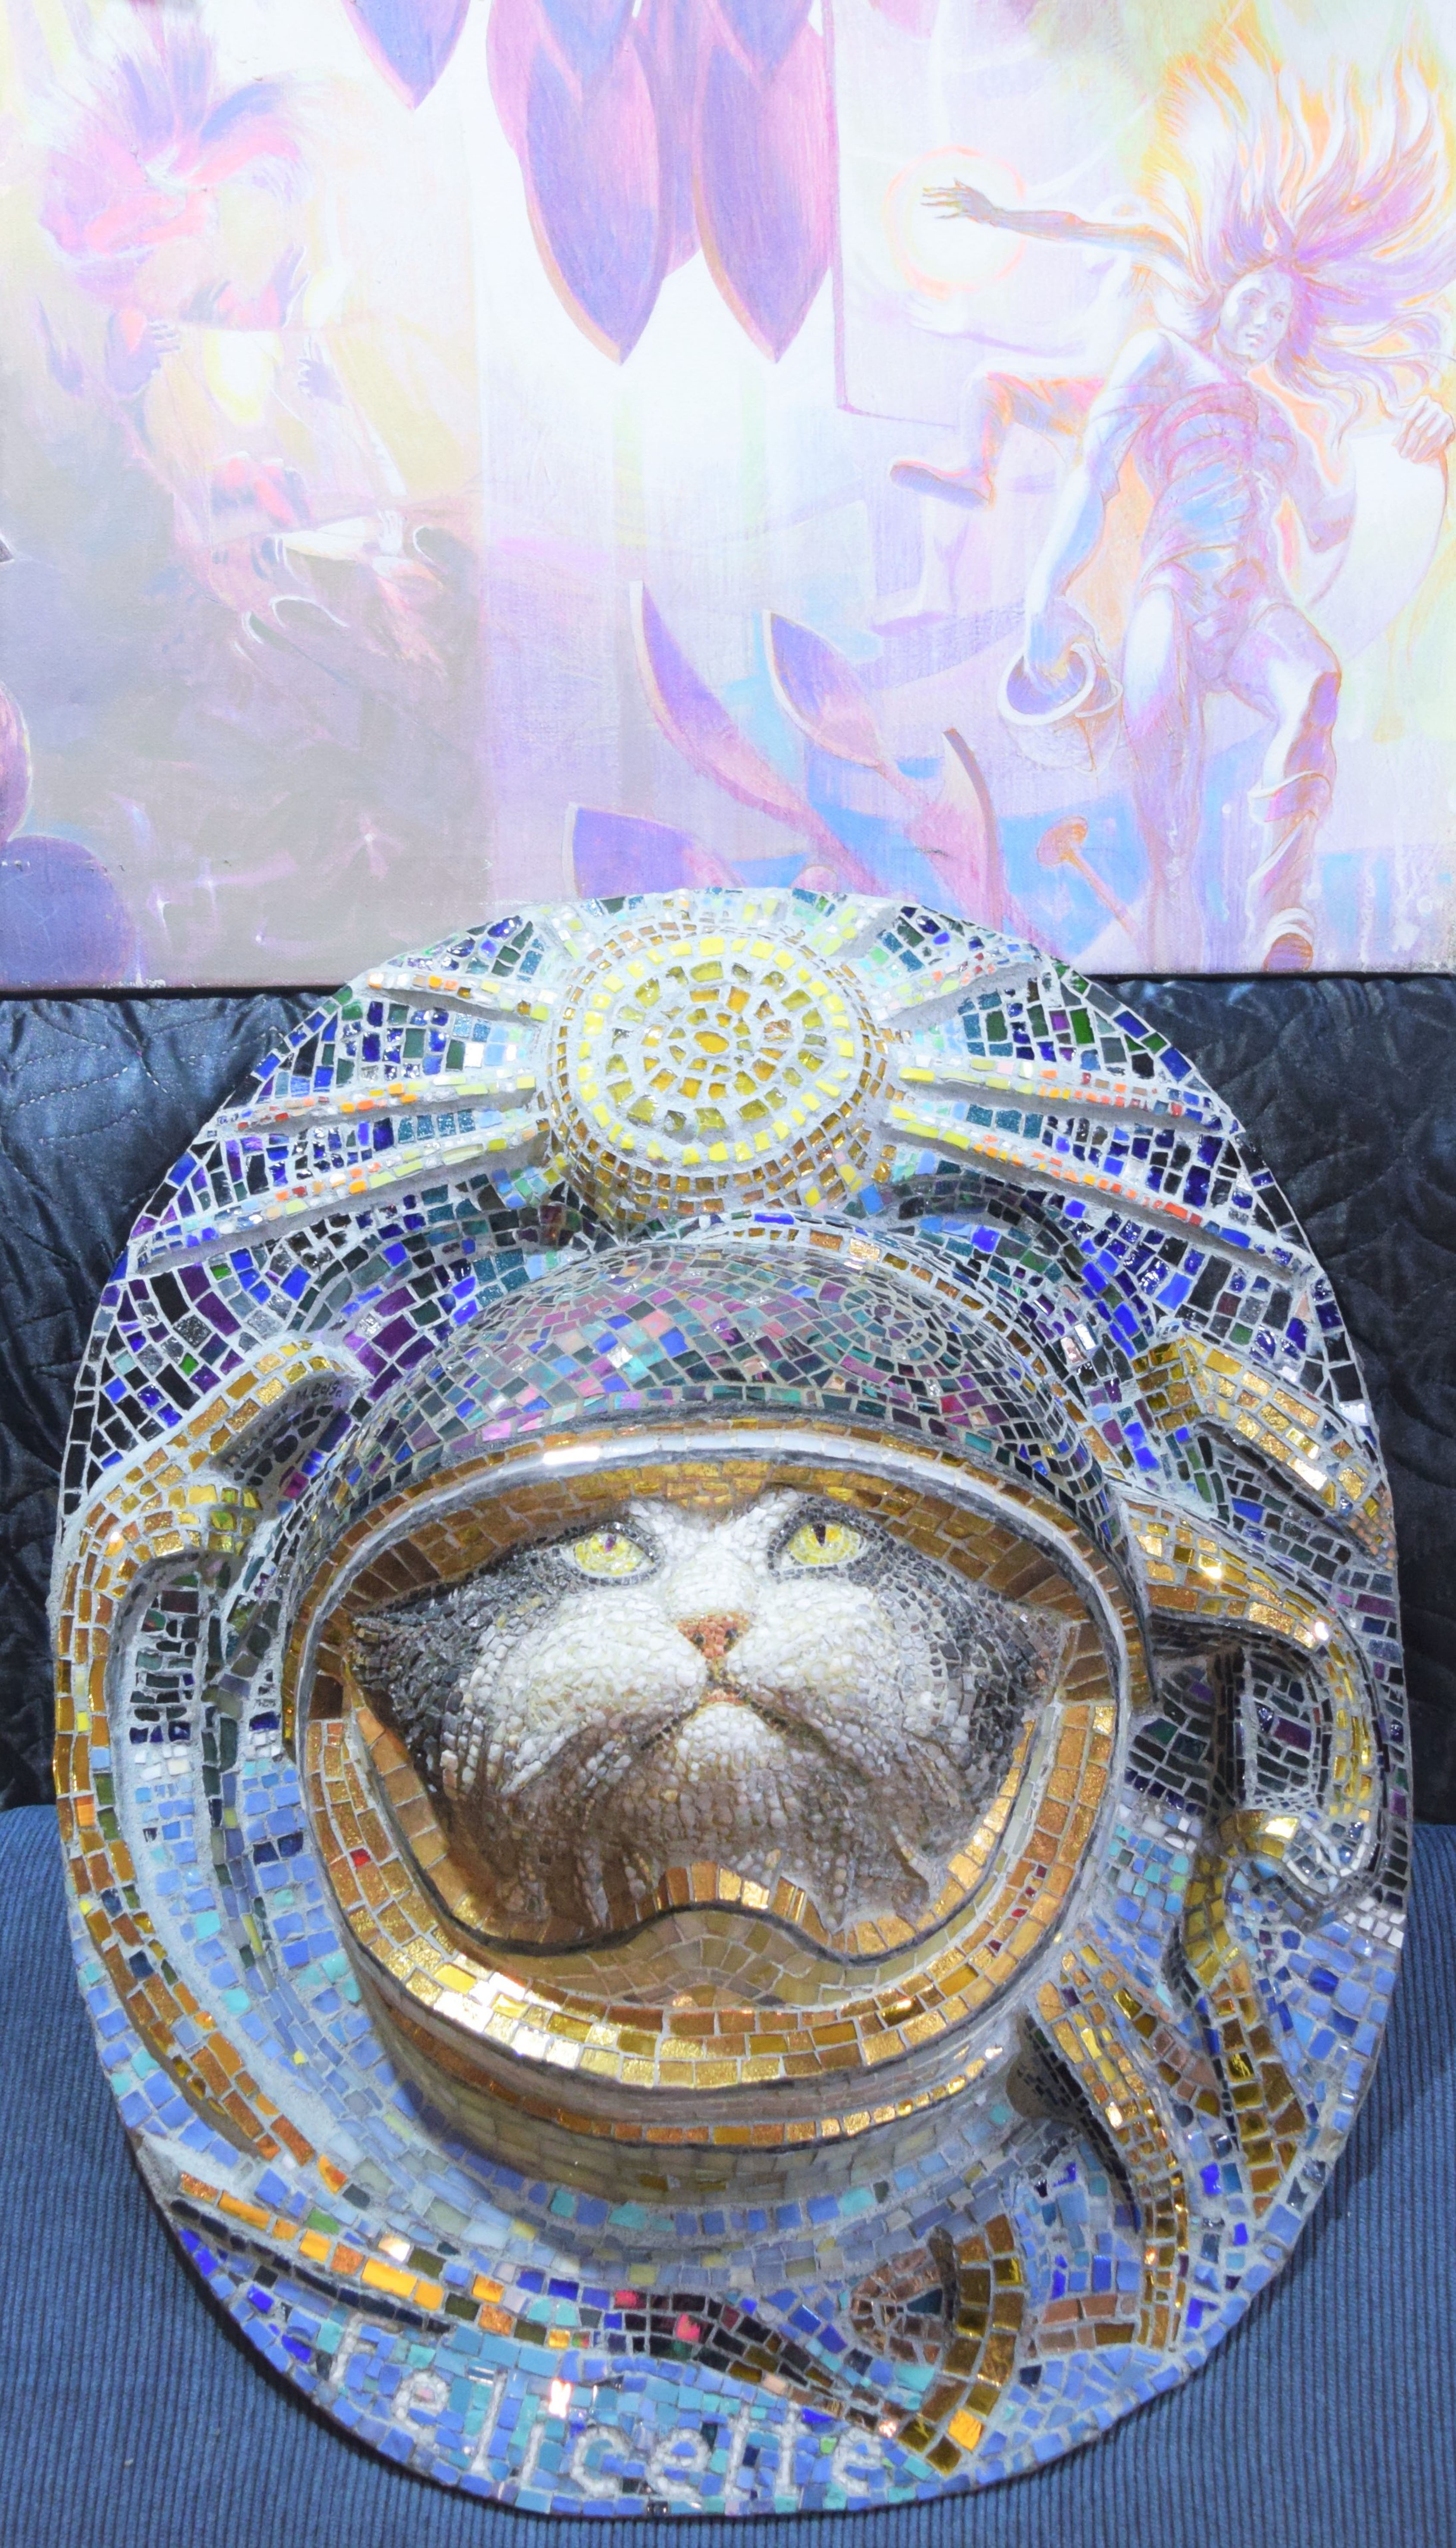 Мозаичный памятник Фелисетт - кошке, побывавшей в космосе